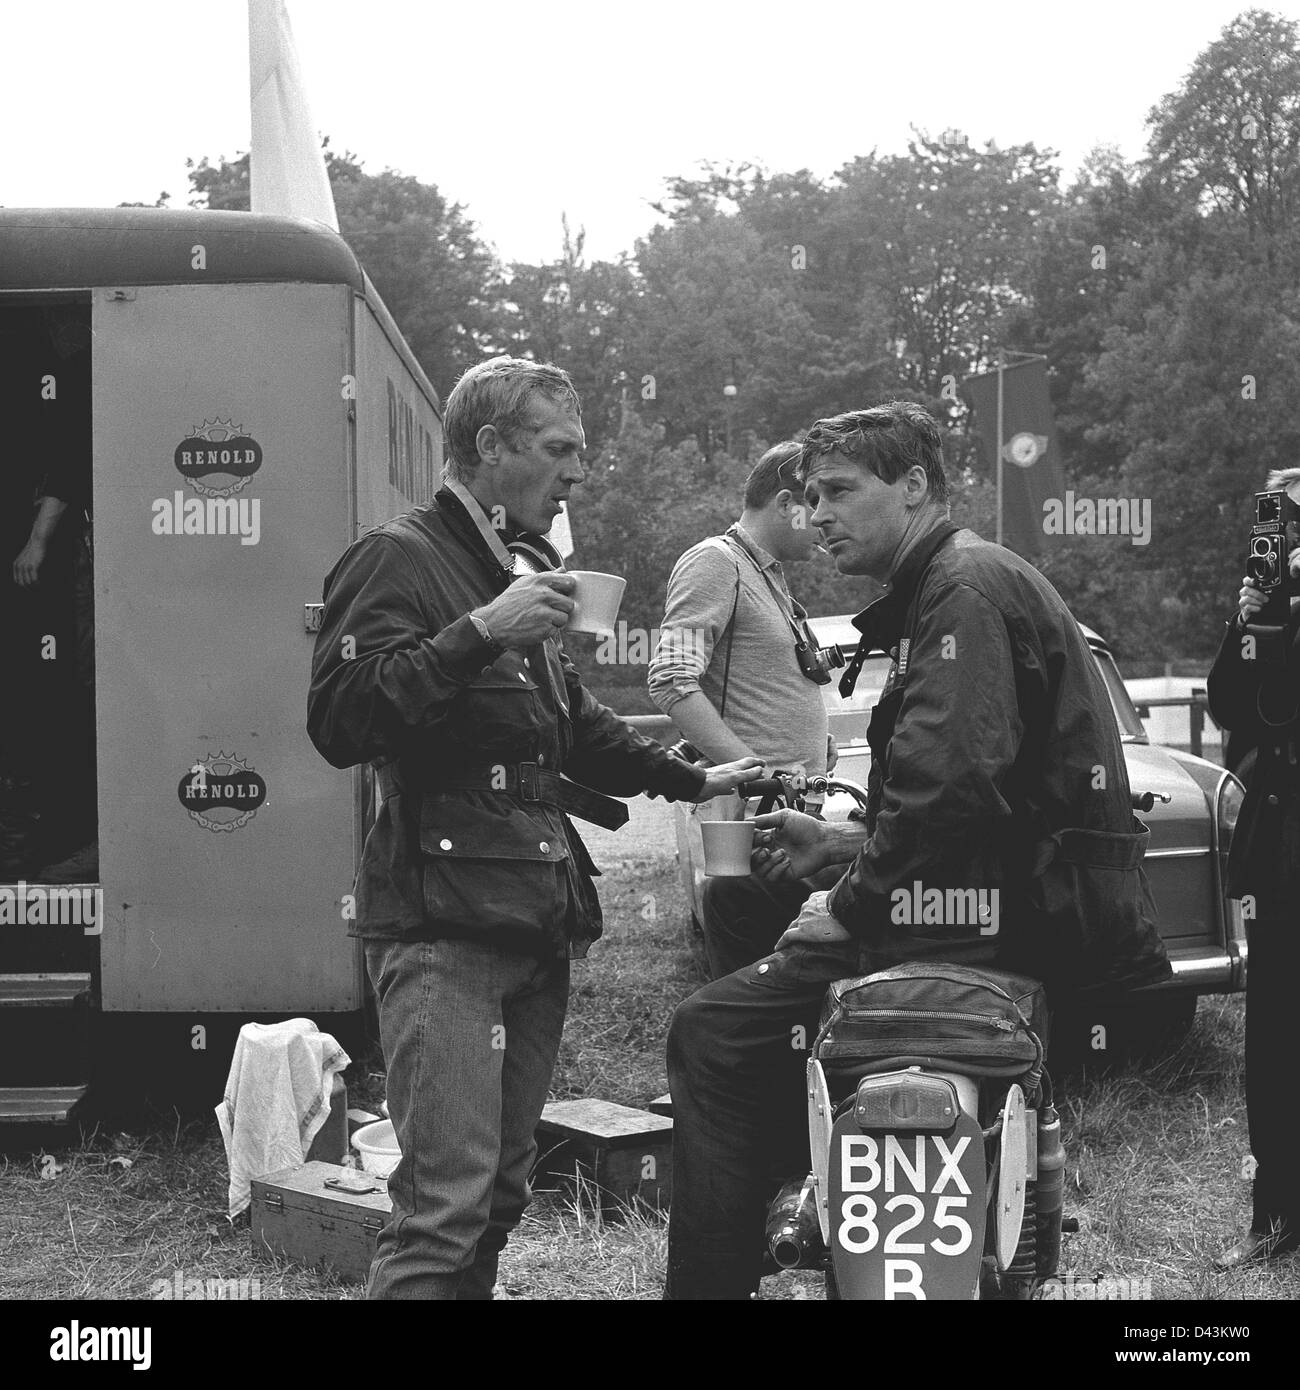 US-Schauspieler Steve McQueen (L) hat einen Kaffee während einer Erholungsphase, wie er in der internationalen Motorrad-Rennen "Six Days' on seinen Triumph mit der Nummer 278" in Erfurt, Deutsche Demokratische Republik (DDR) 1964 teilnahm. Fahrer und Motorräder der Marke DDR MZ waren erstklassige Produkte in den Motorrad Wettbewerben der 1960er Jahre. Foto. Dieter Demme Stockfoto